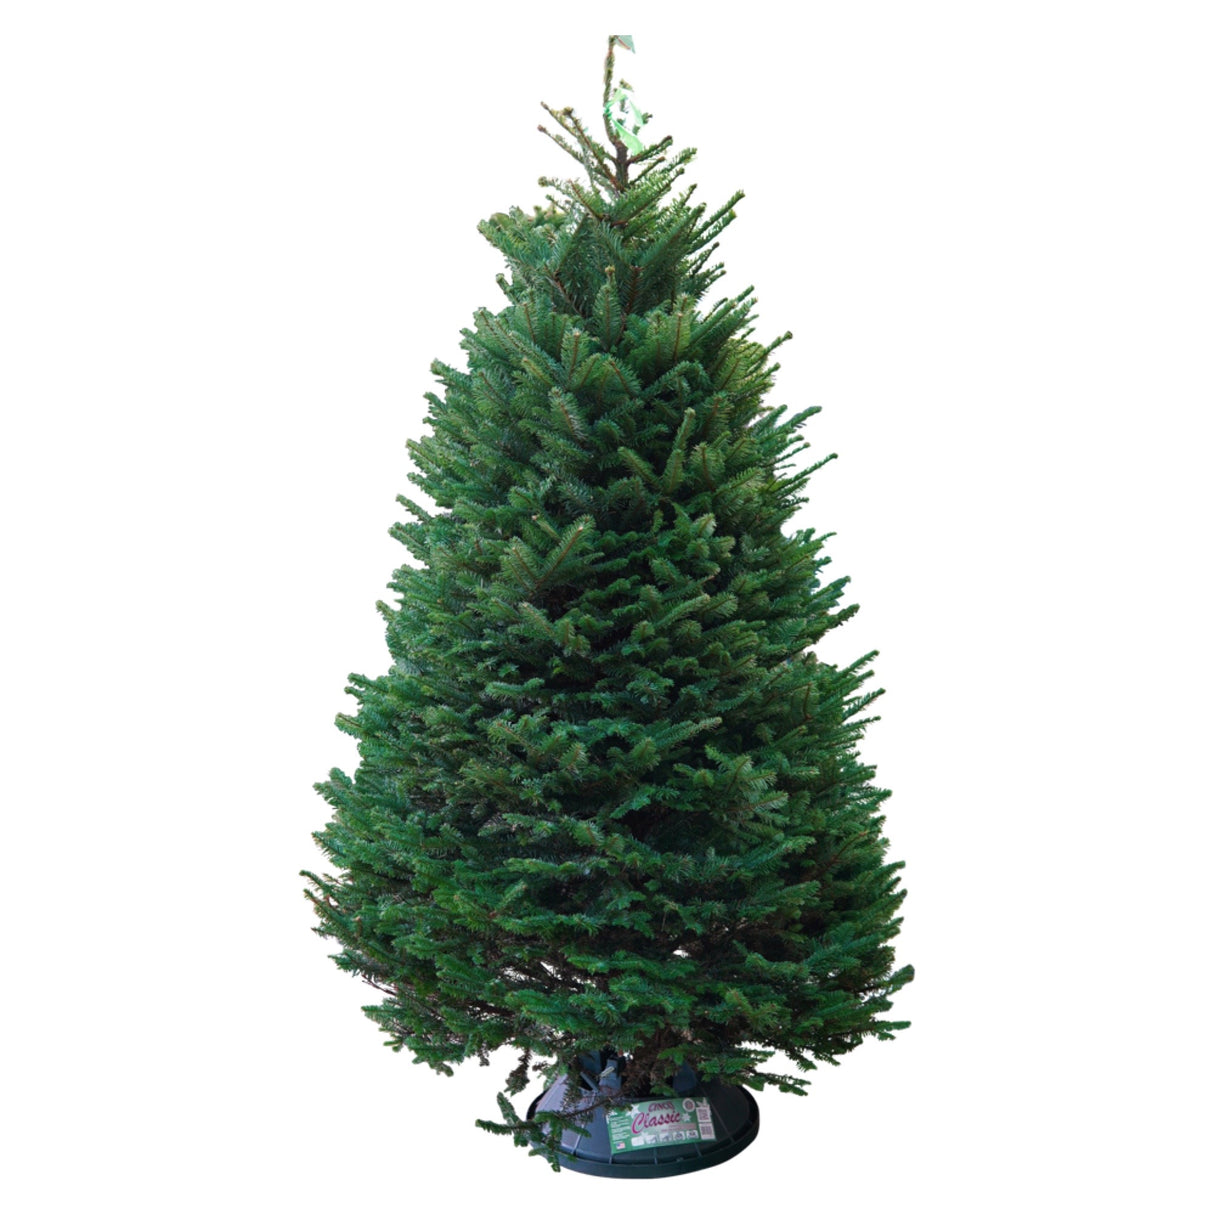 Noble Fir Christmas Tree 8-9FT (USA)